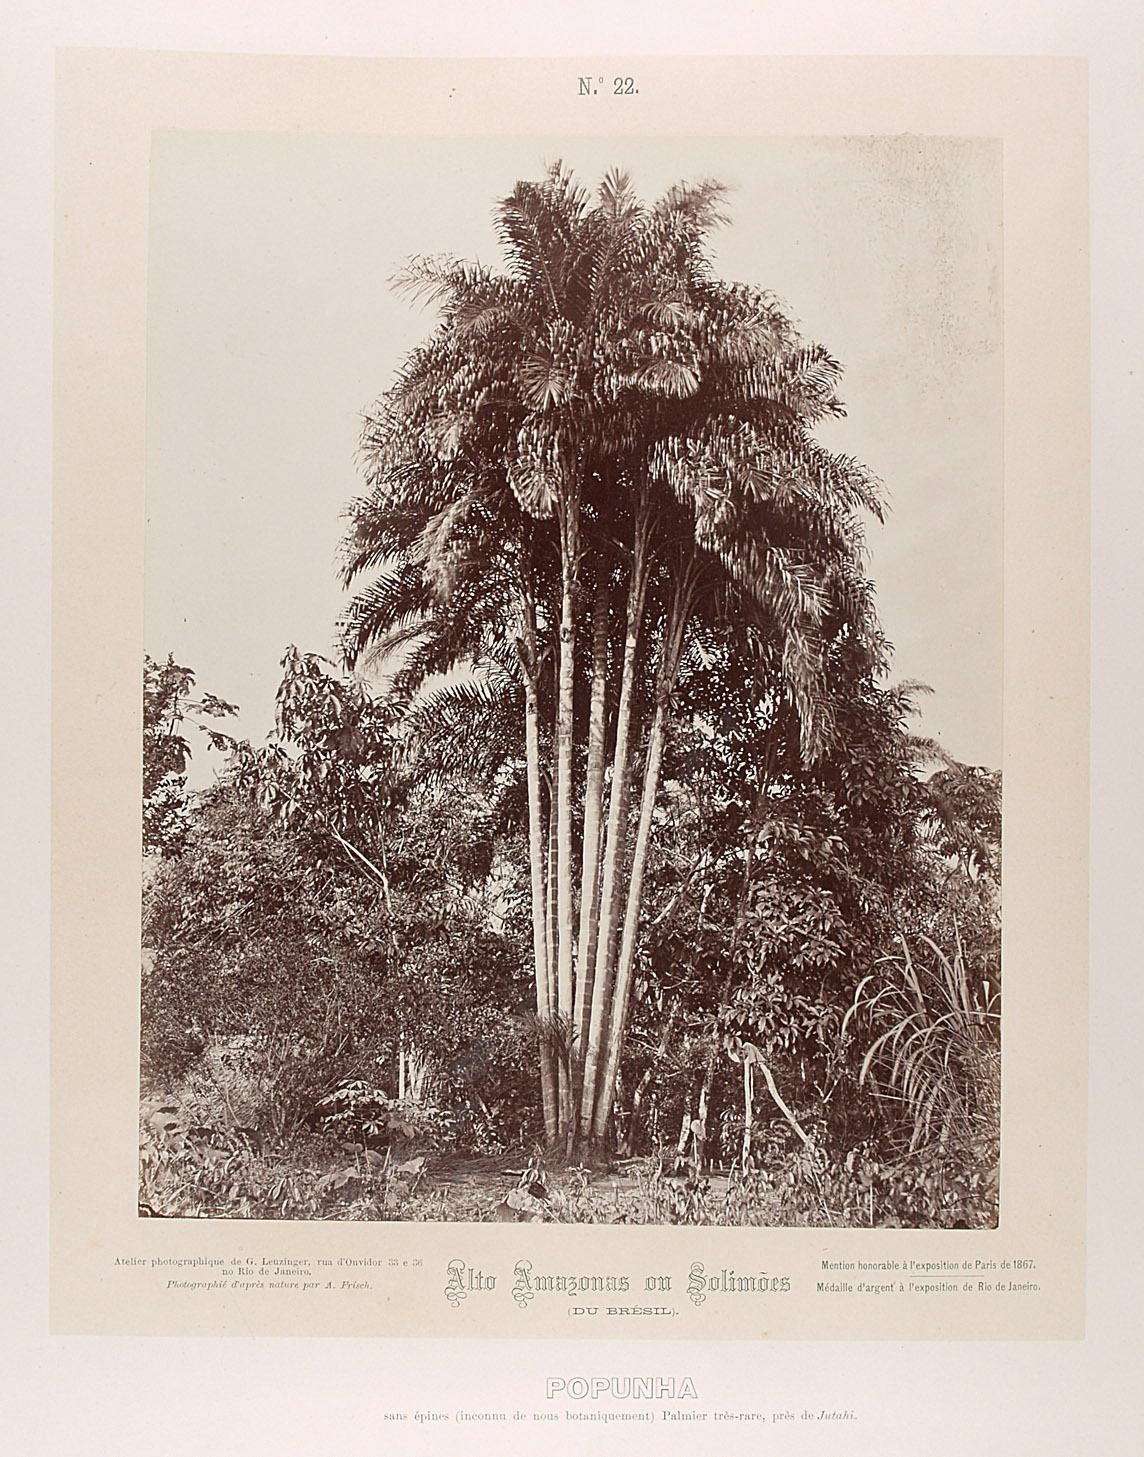 Gruppe von Popunha (Palmen) von Albert Frisch